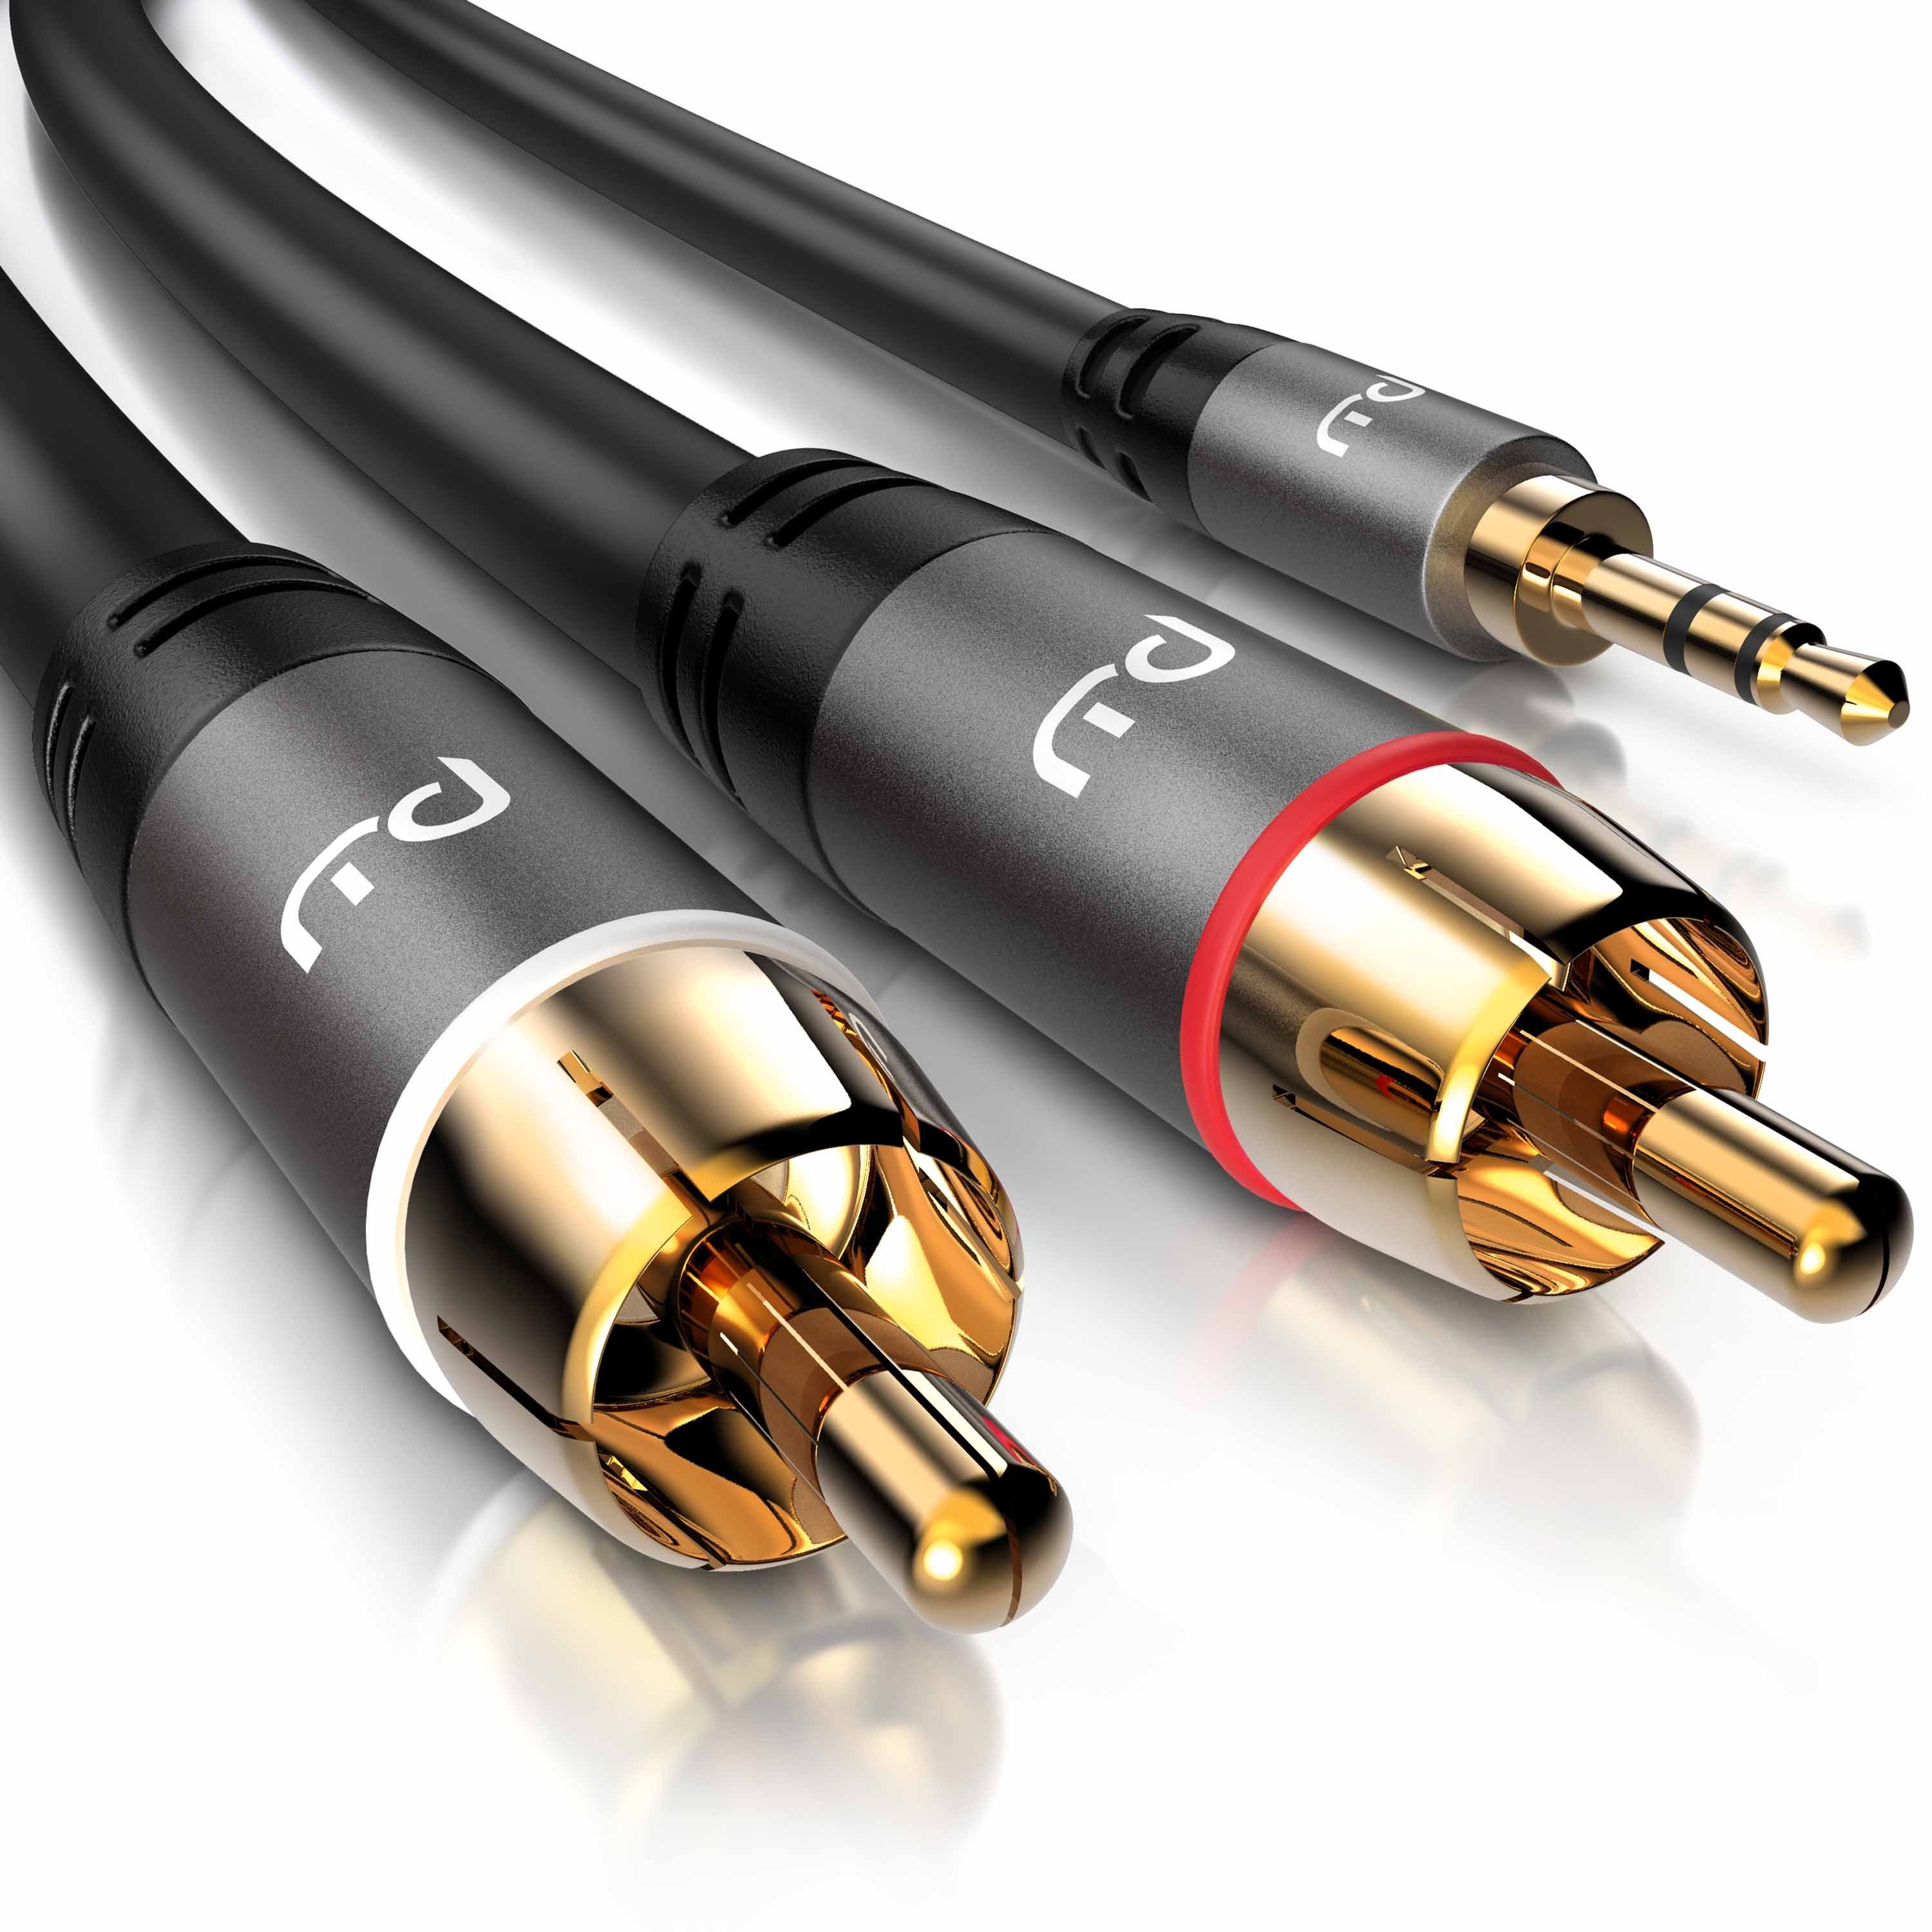 Primewire Audio-Kabel, CINCH; AUX, 2x Cinch; 3,5mm Klinke (50 cm), Stereo  HiFi Audio-Adapter mehrfach geschirmt online kaufen | OTTO